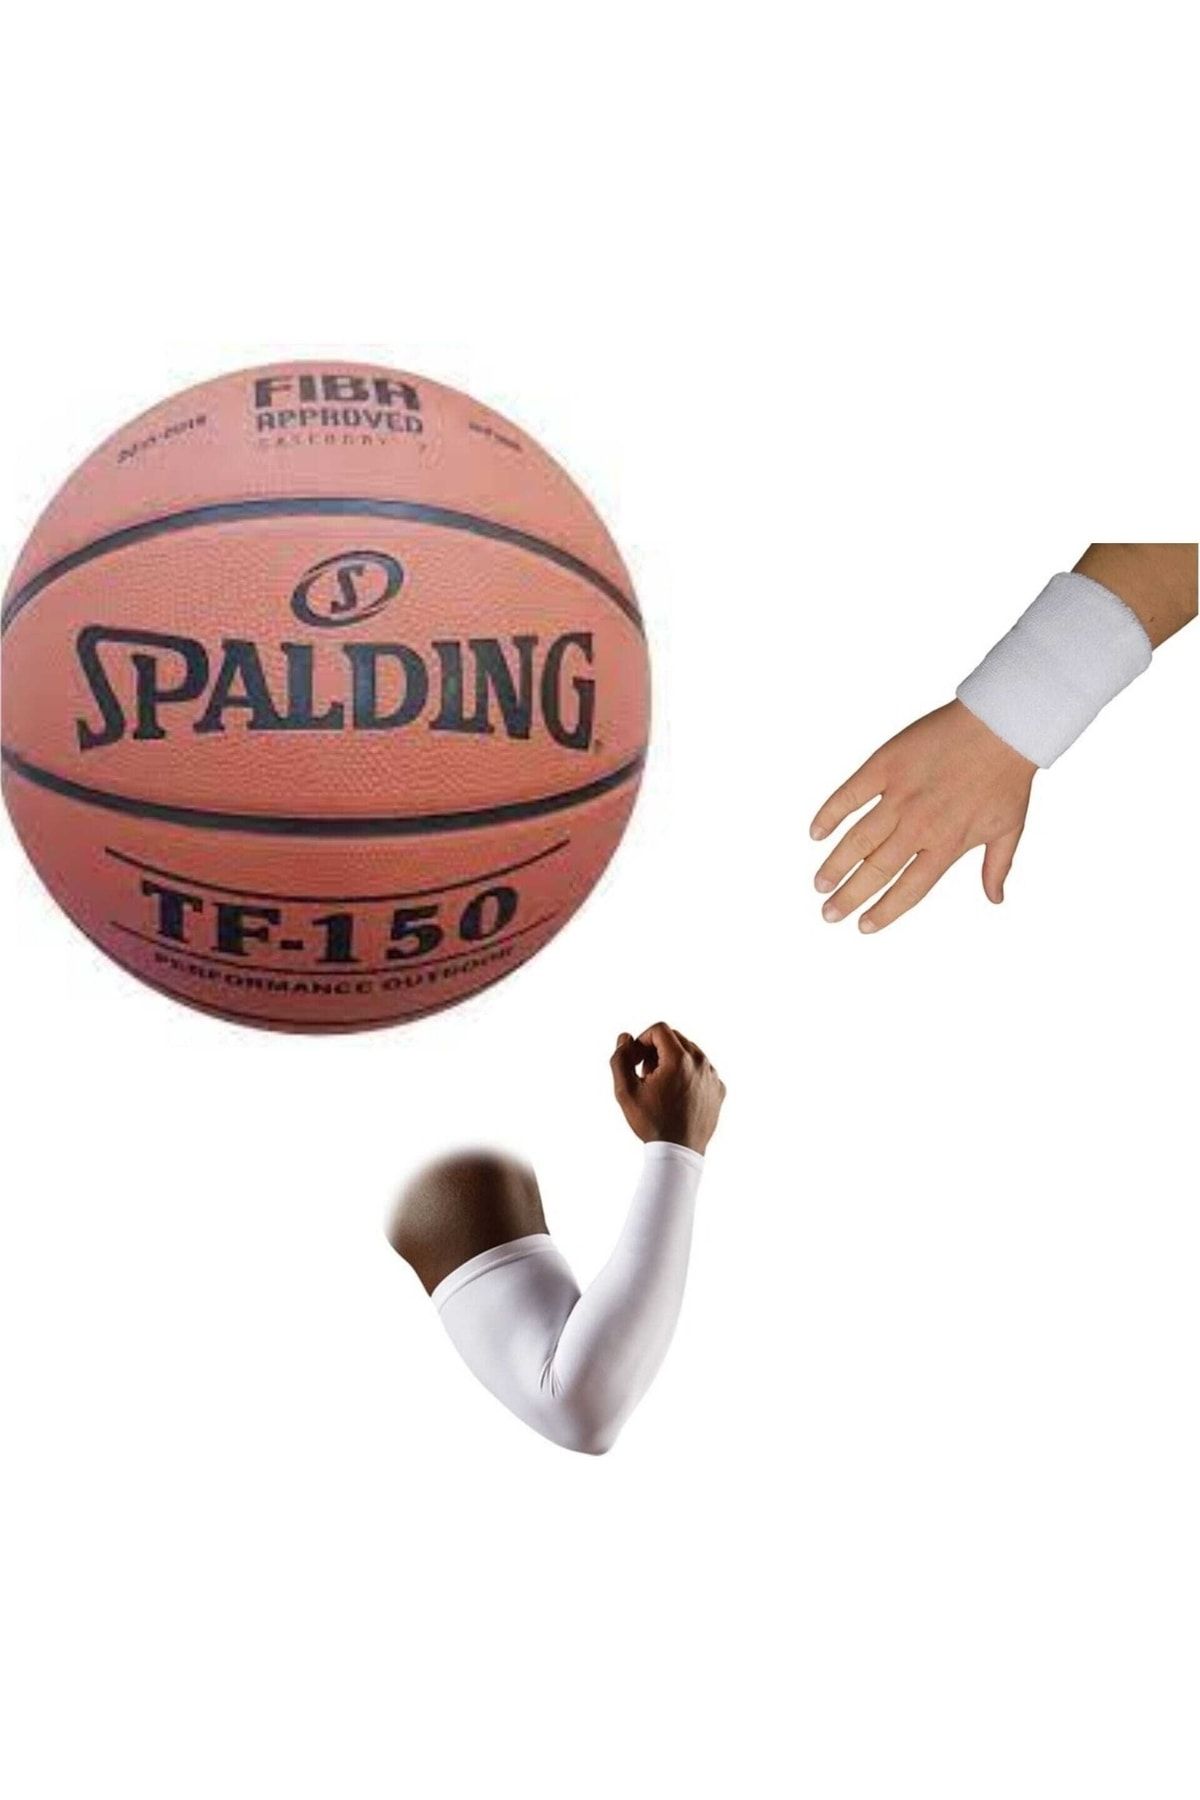 Spalding Tf-150 Basketbol Topu Perform Size 5 Fıba Logolu+basketbol Dirsekliği+havlu Bileklik